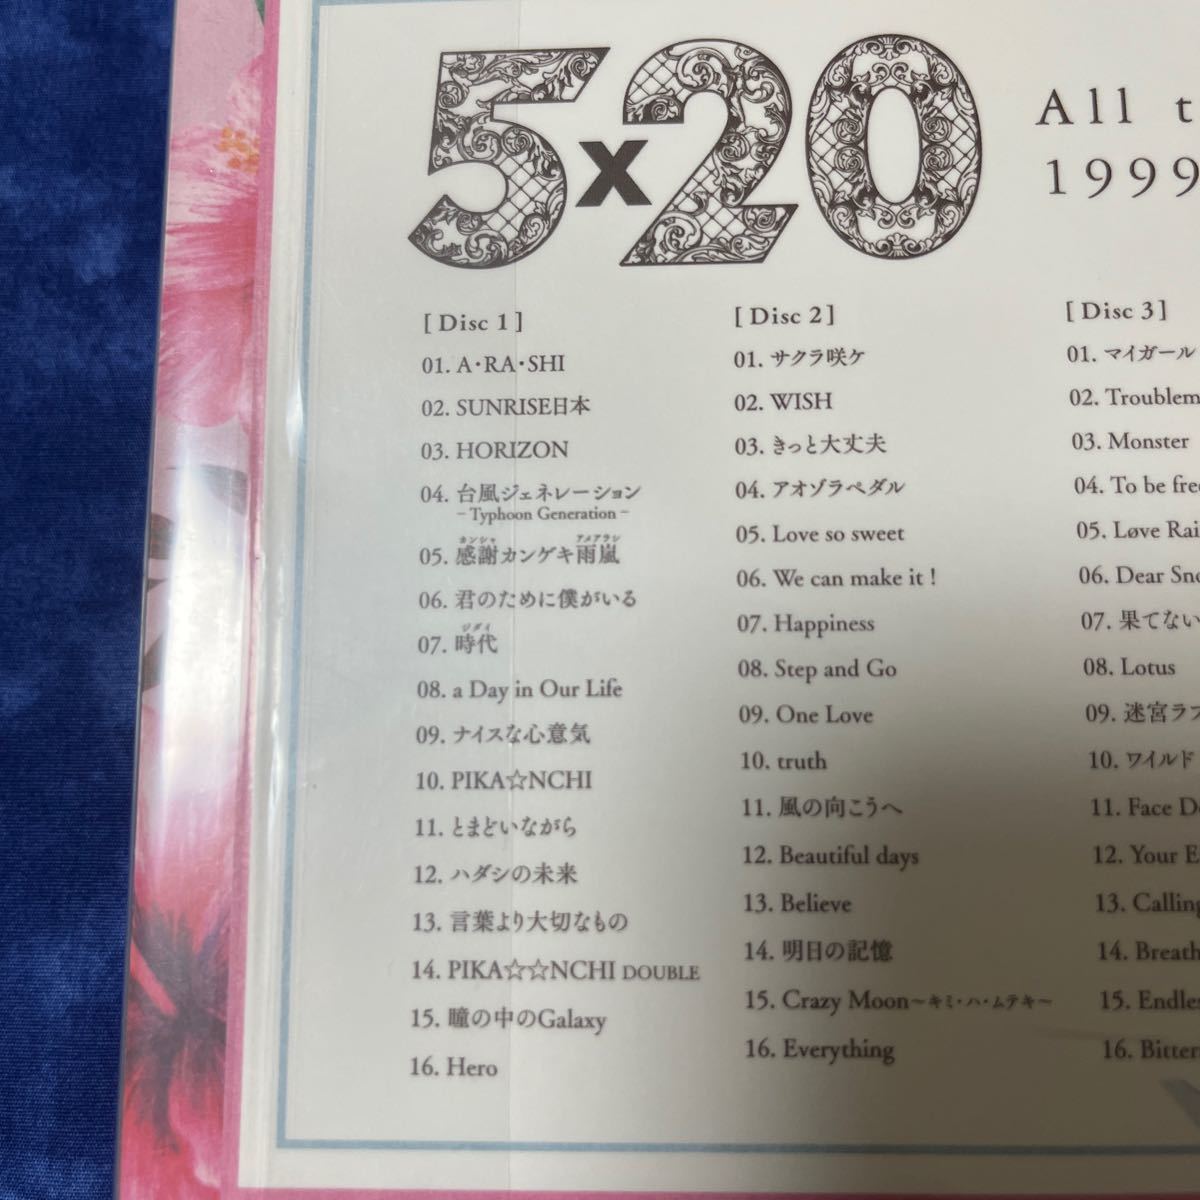 嵐/5×20 All the BEST 1999-2019 (JALハワイ線限定盤) (4CD) 新品未